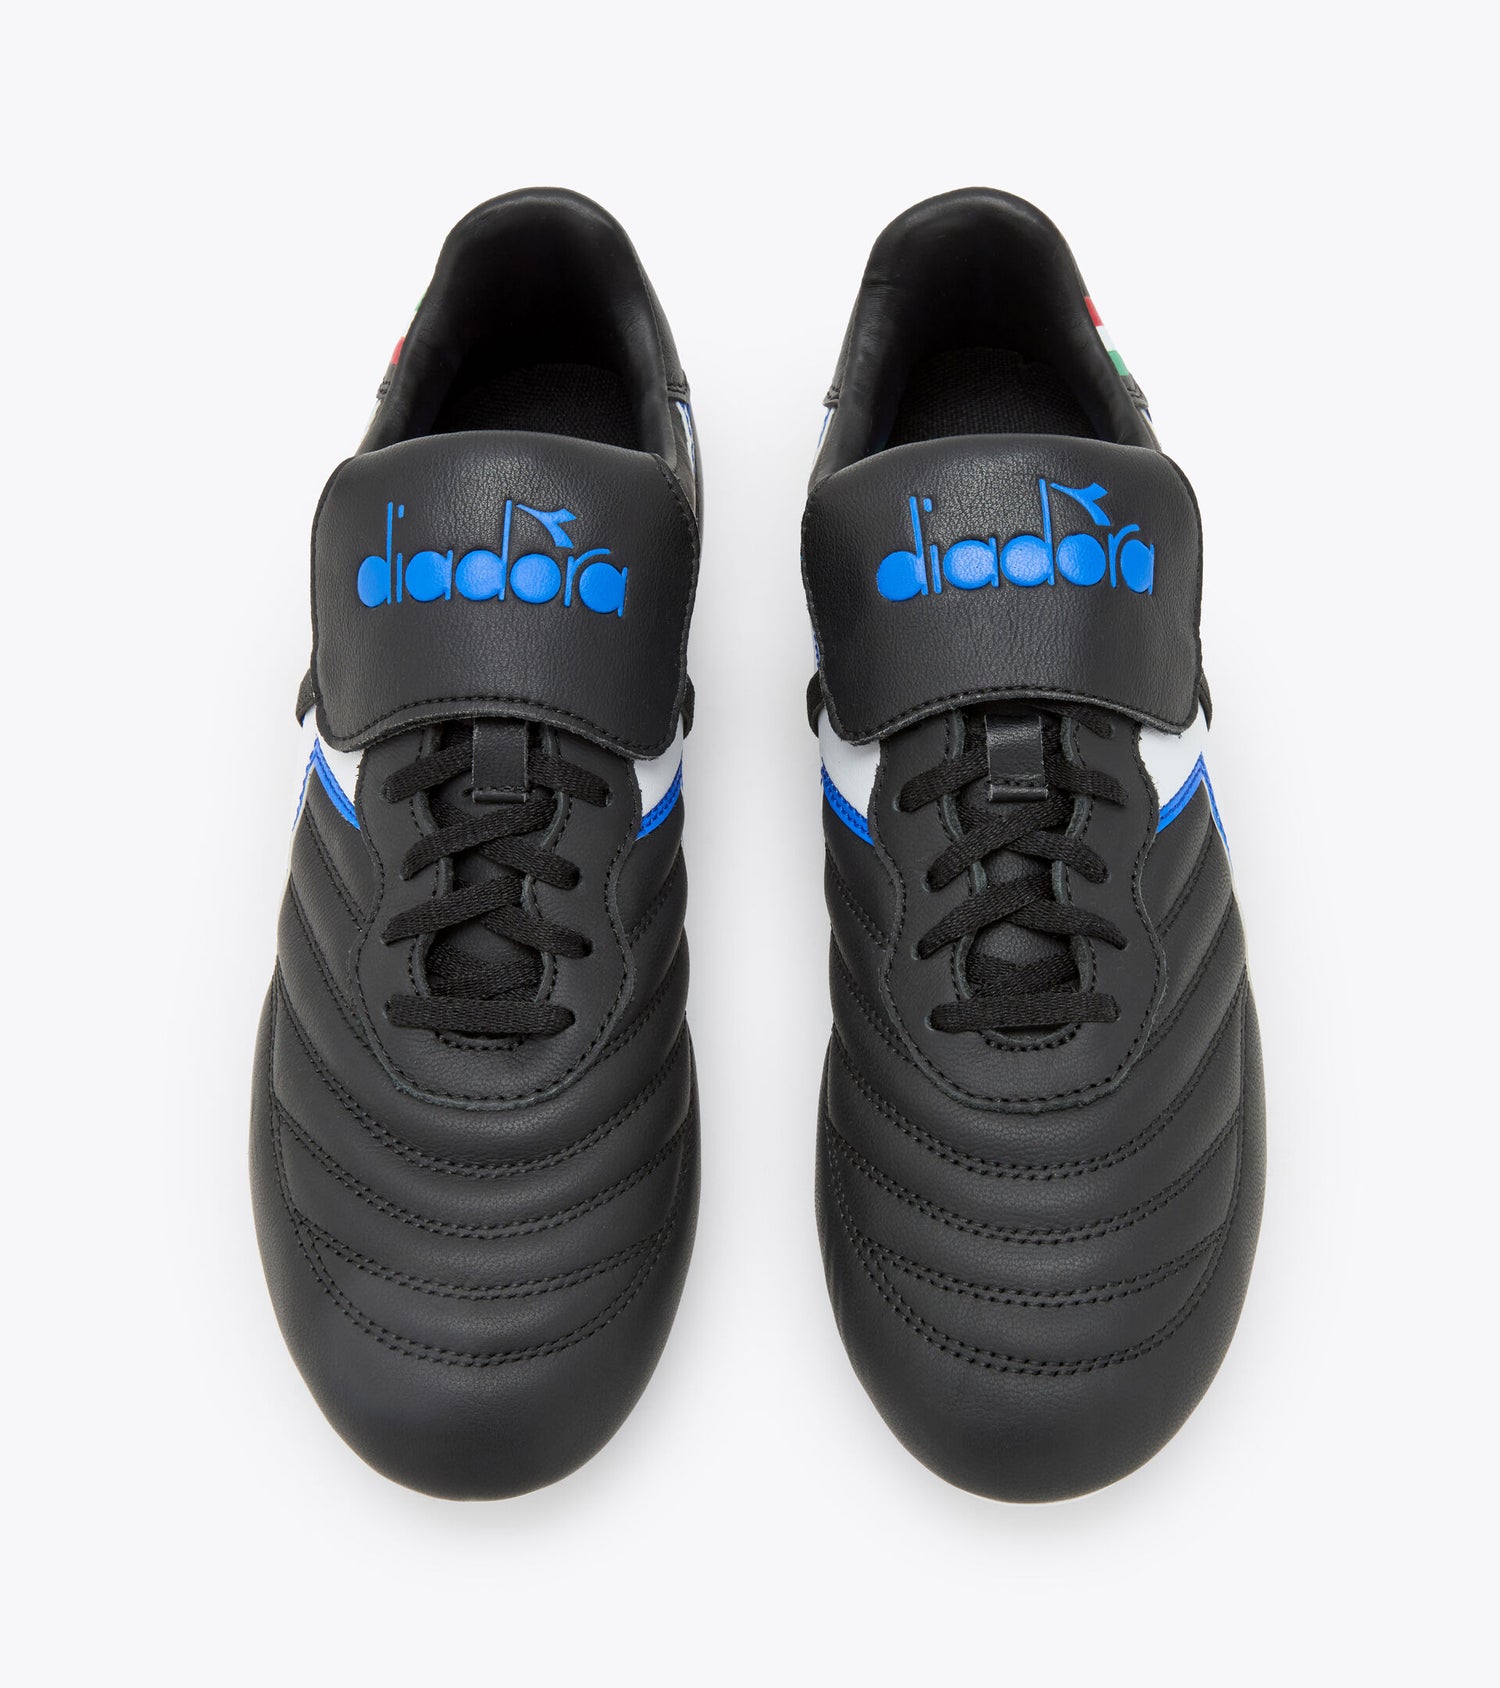 Diadora Brasil OG LT T MDPU Soccer Boots - Black/White/Royal Blue